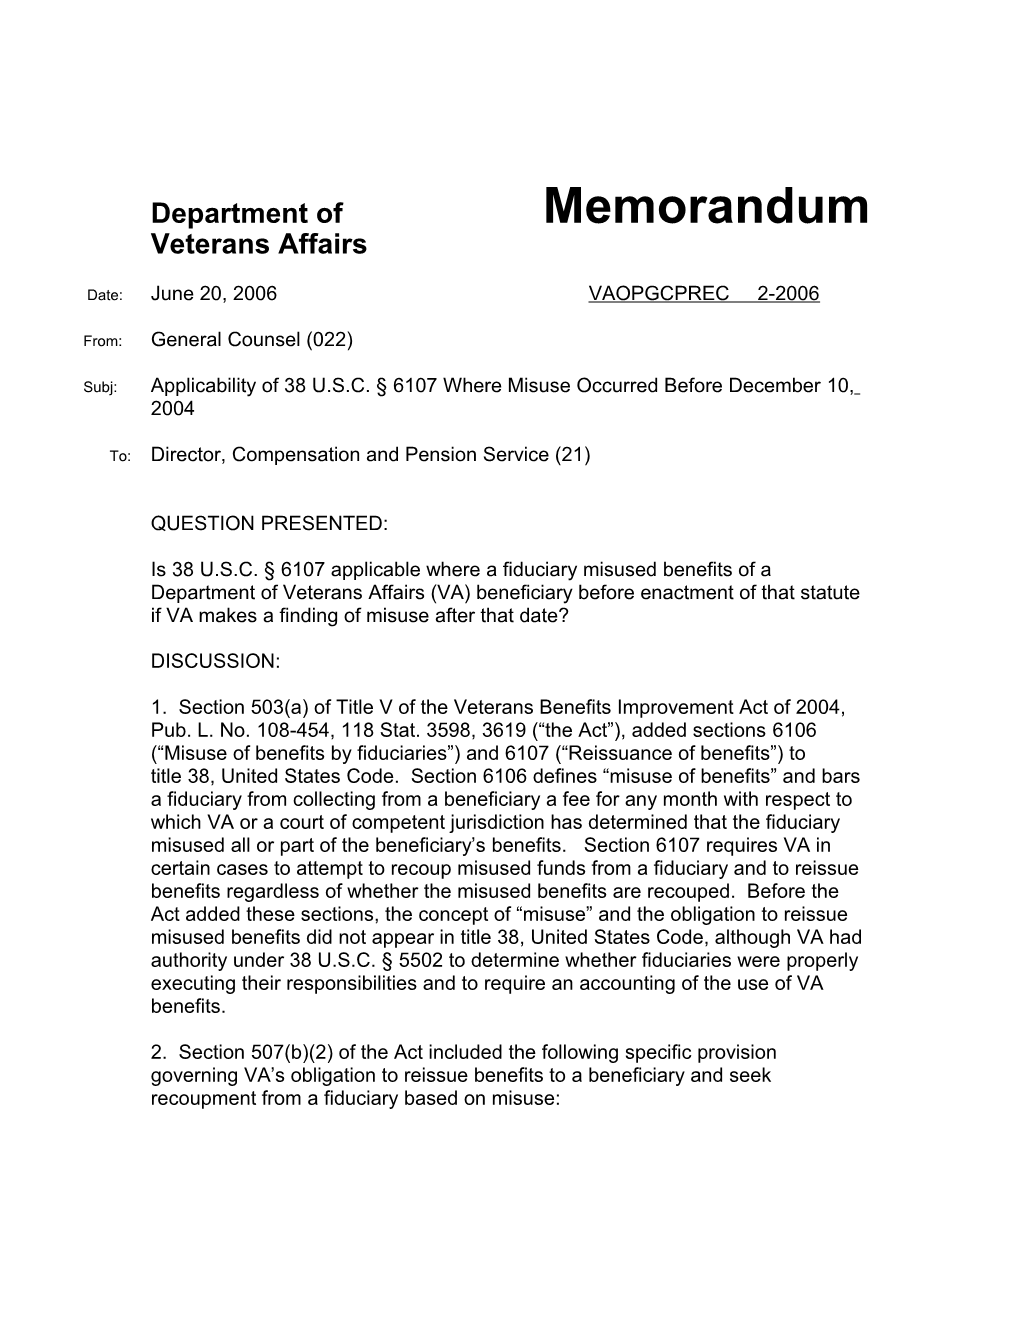 Department of Memorandum s2